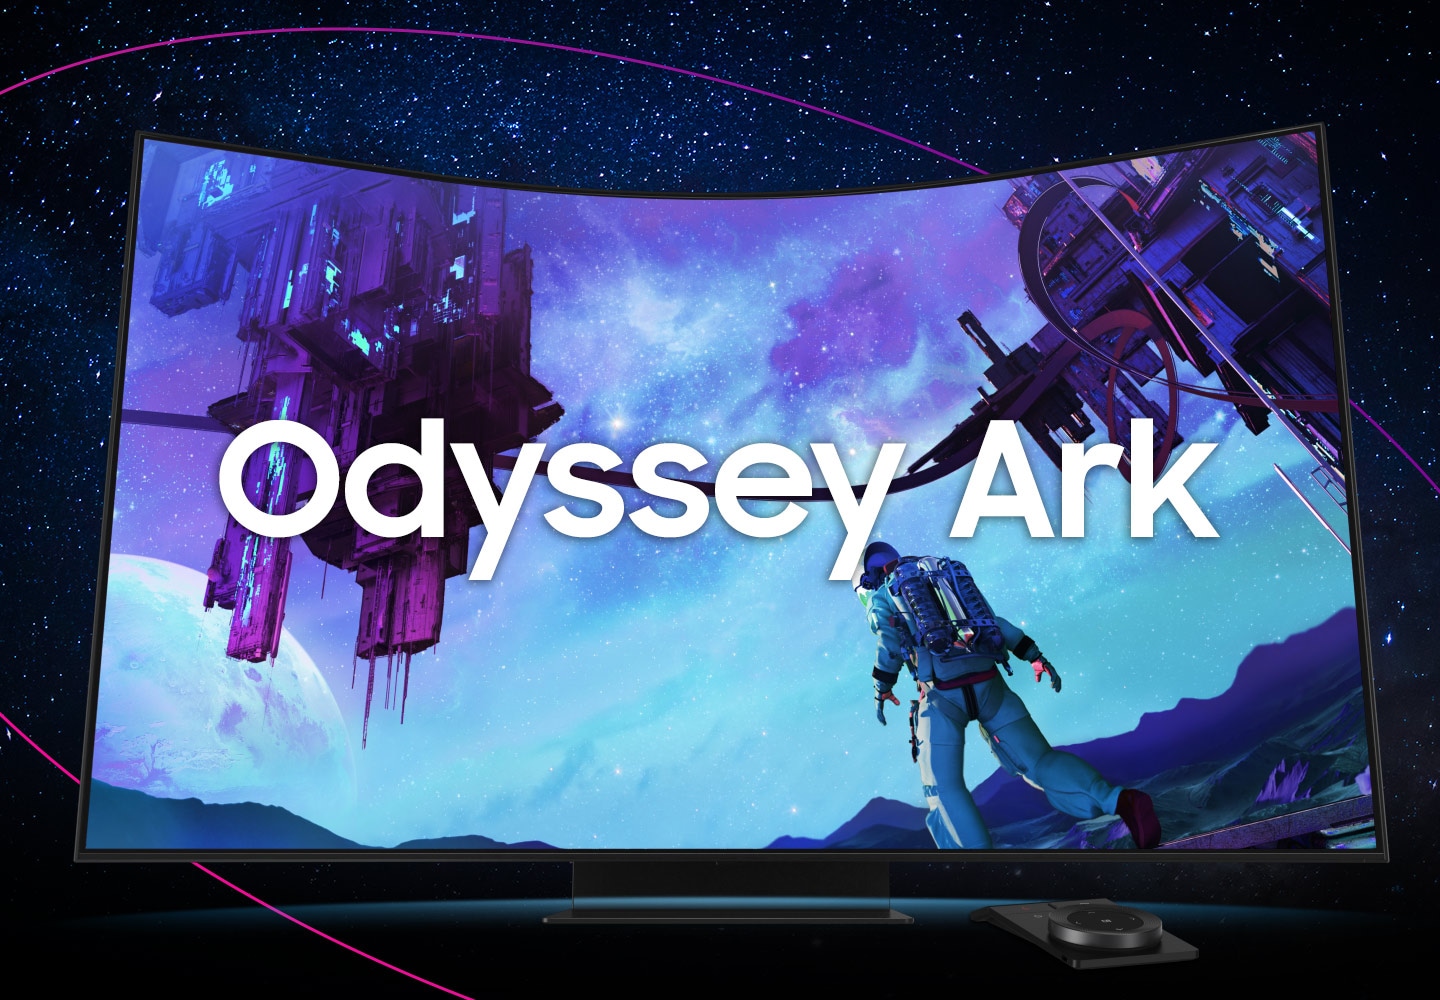 Ko izgovorite "The Chosen Journey On", se sprednji monitor zavrti za 180 stopinj, da razkrije hrbet, preden se poveča na vrhu zaslona. Zaslon monitorja se bo nato obrnil iz vodoravnega v navpični. Pojavile se bodo besede "Your Personal Gaming Theater" in nato zamenjane z "Odyssey Ark".